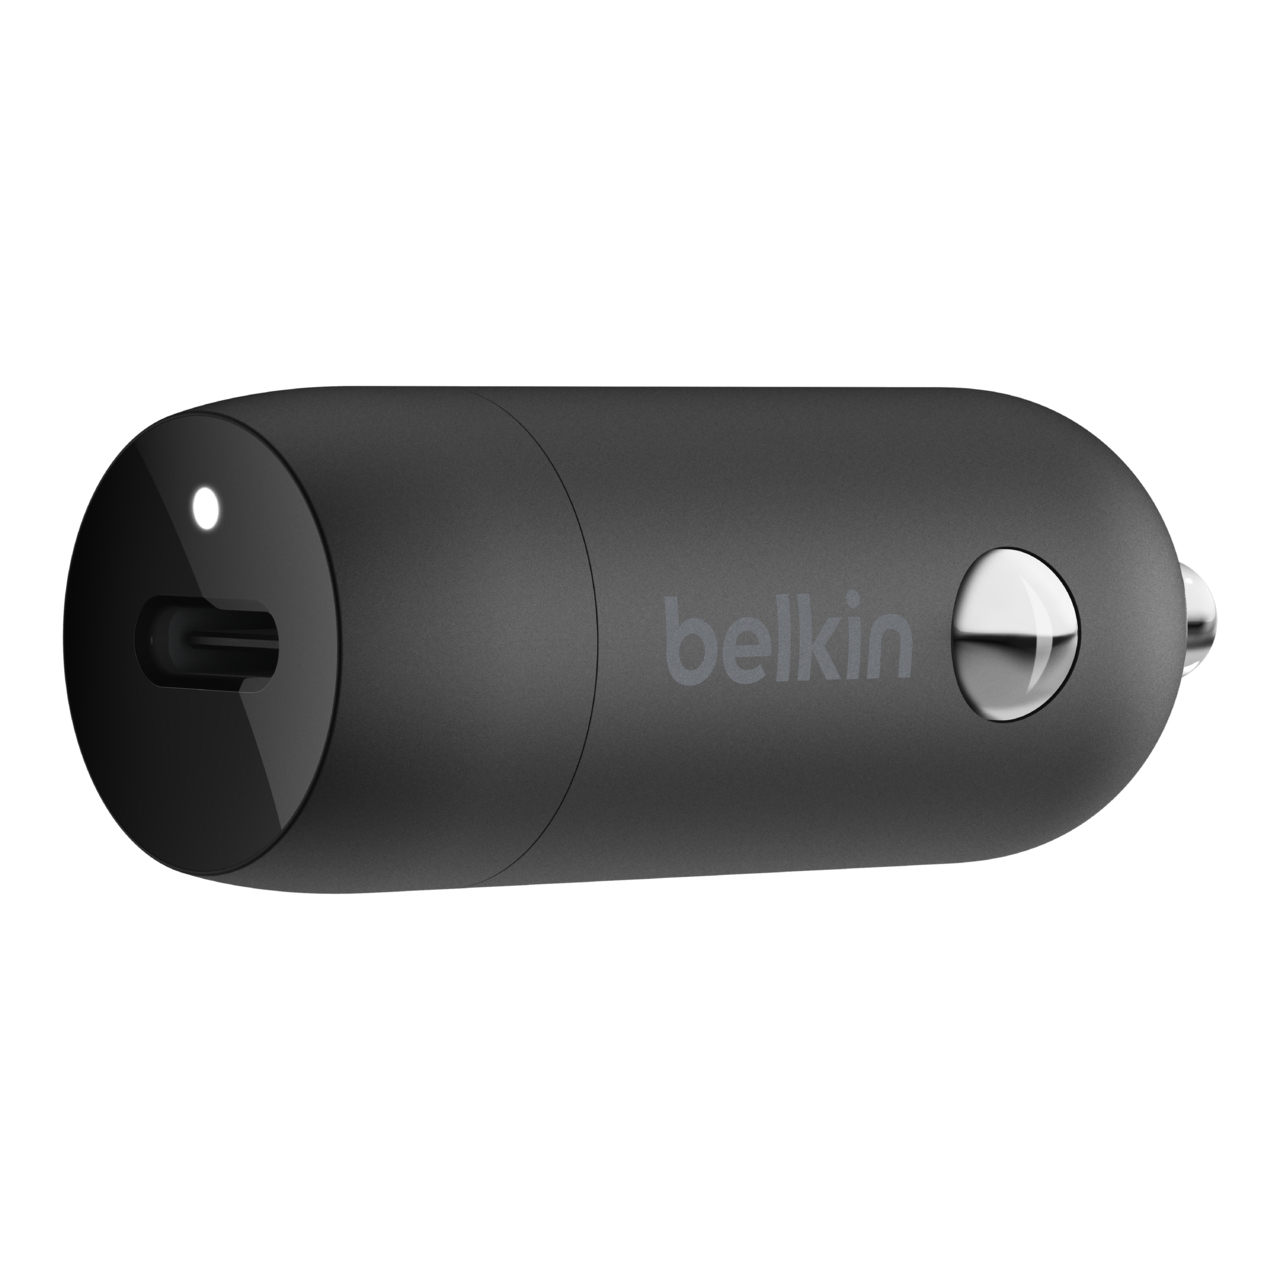 Belkin BoostCharge